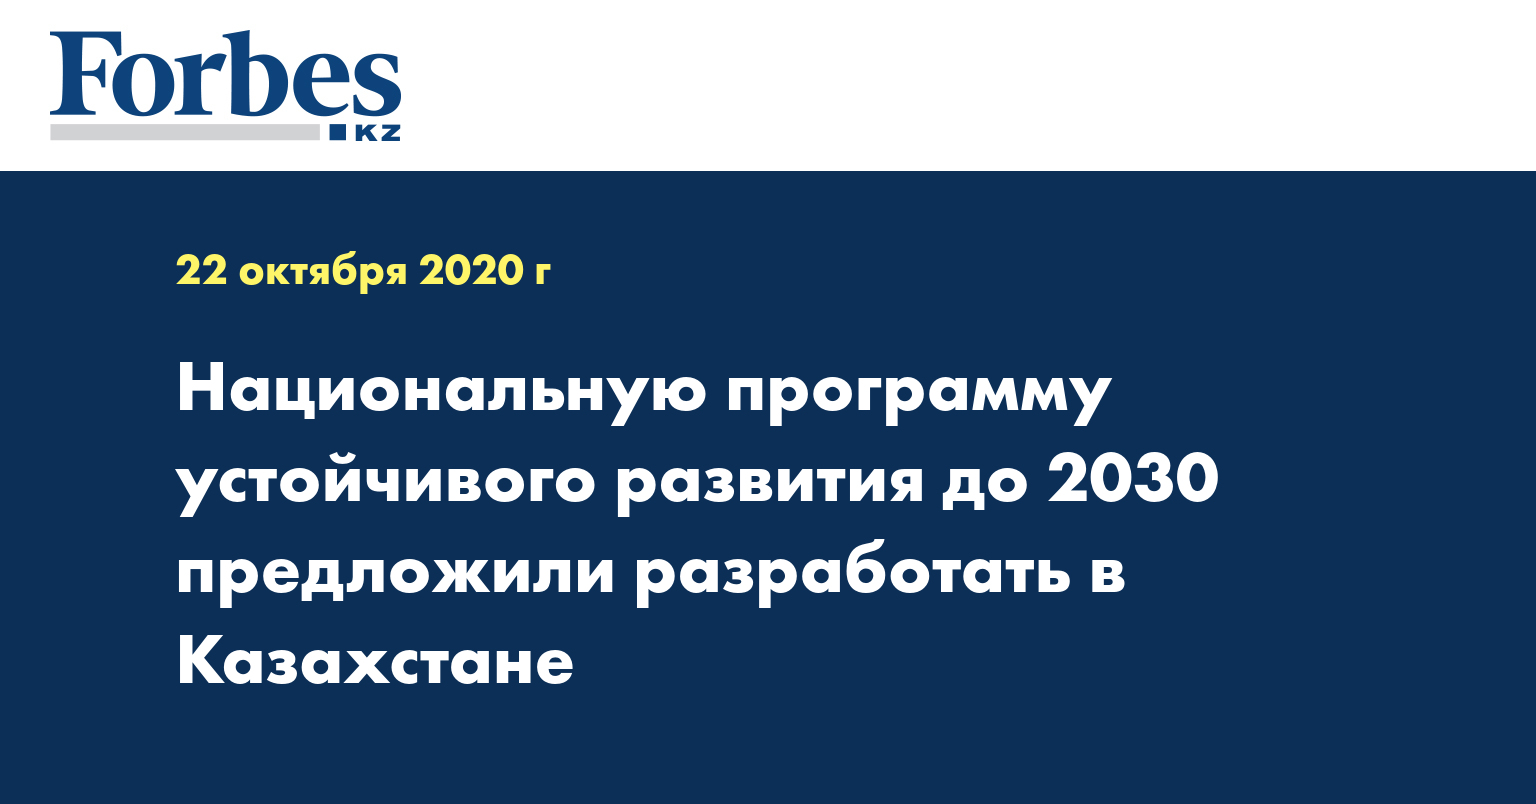 Национальную программу устойчивого развития до 2030 предложили разработать в Казахстане